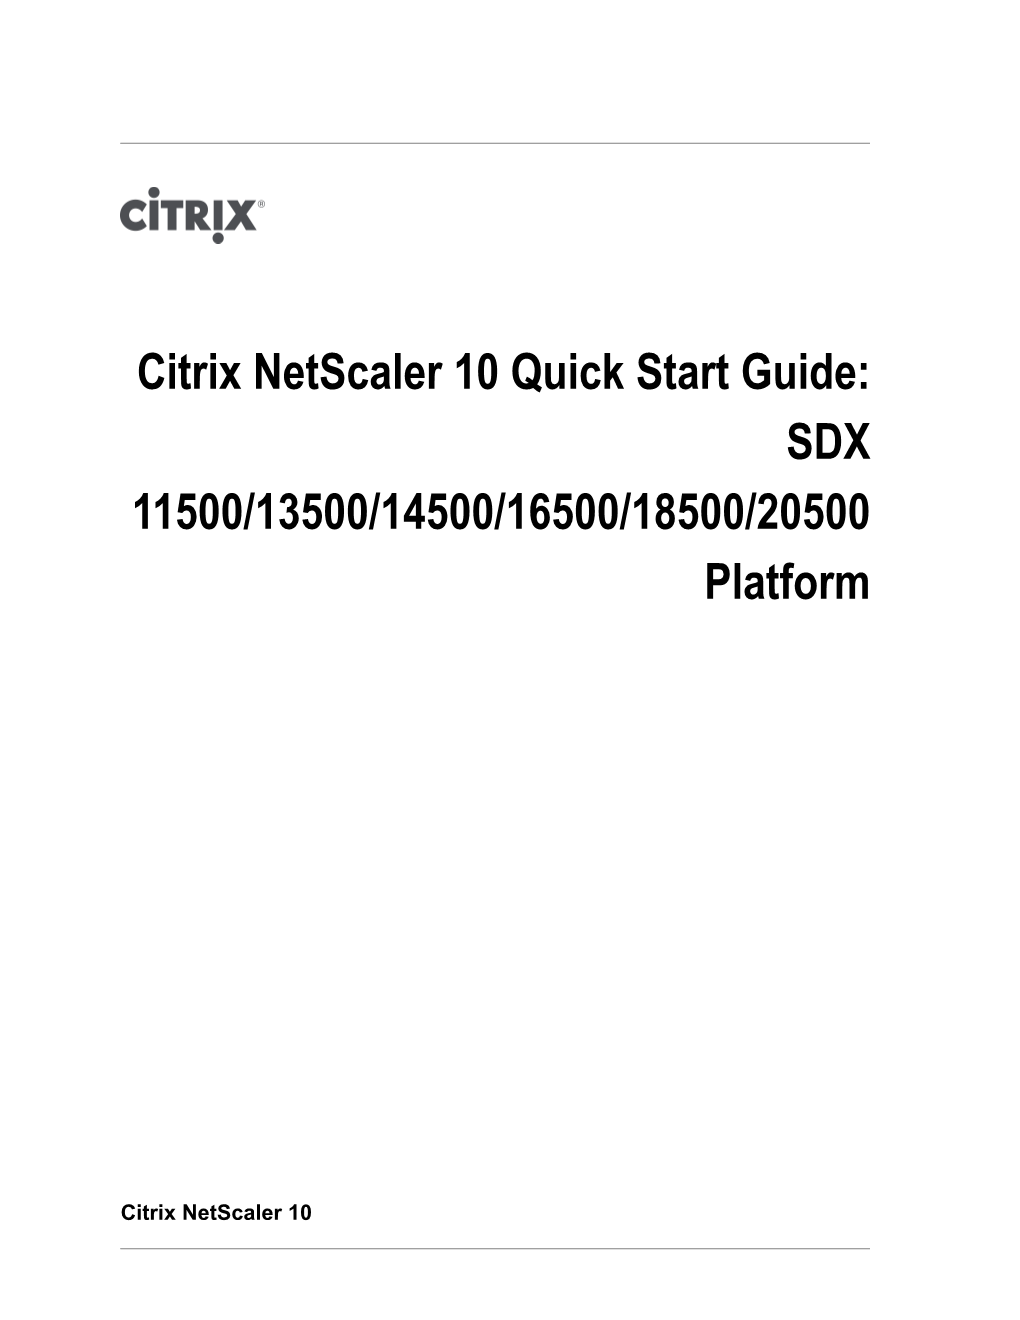 Citrix Netscaler 10 Quick Start Guide: SDX 11500/13500/14500/16500/18500/20500 Platform